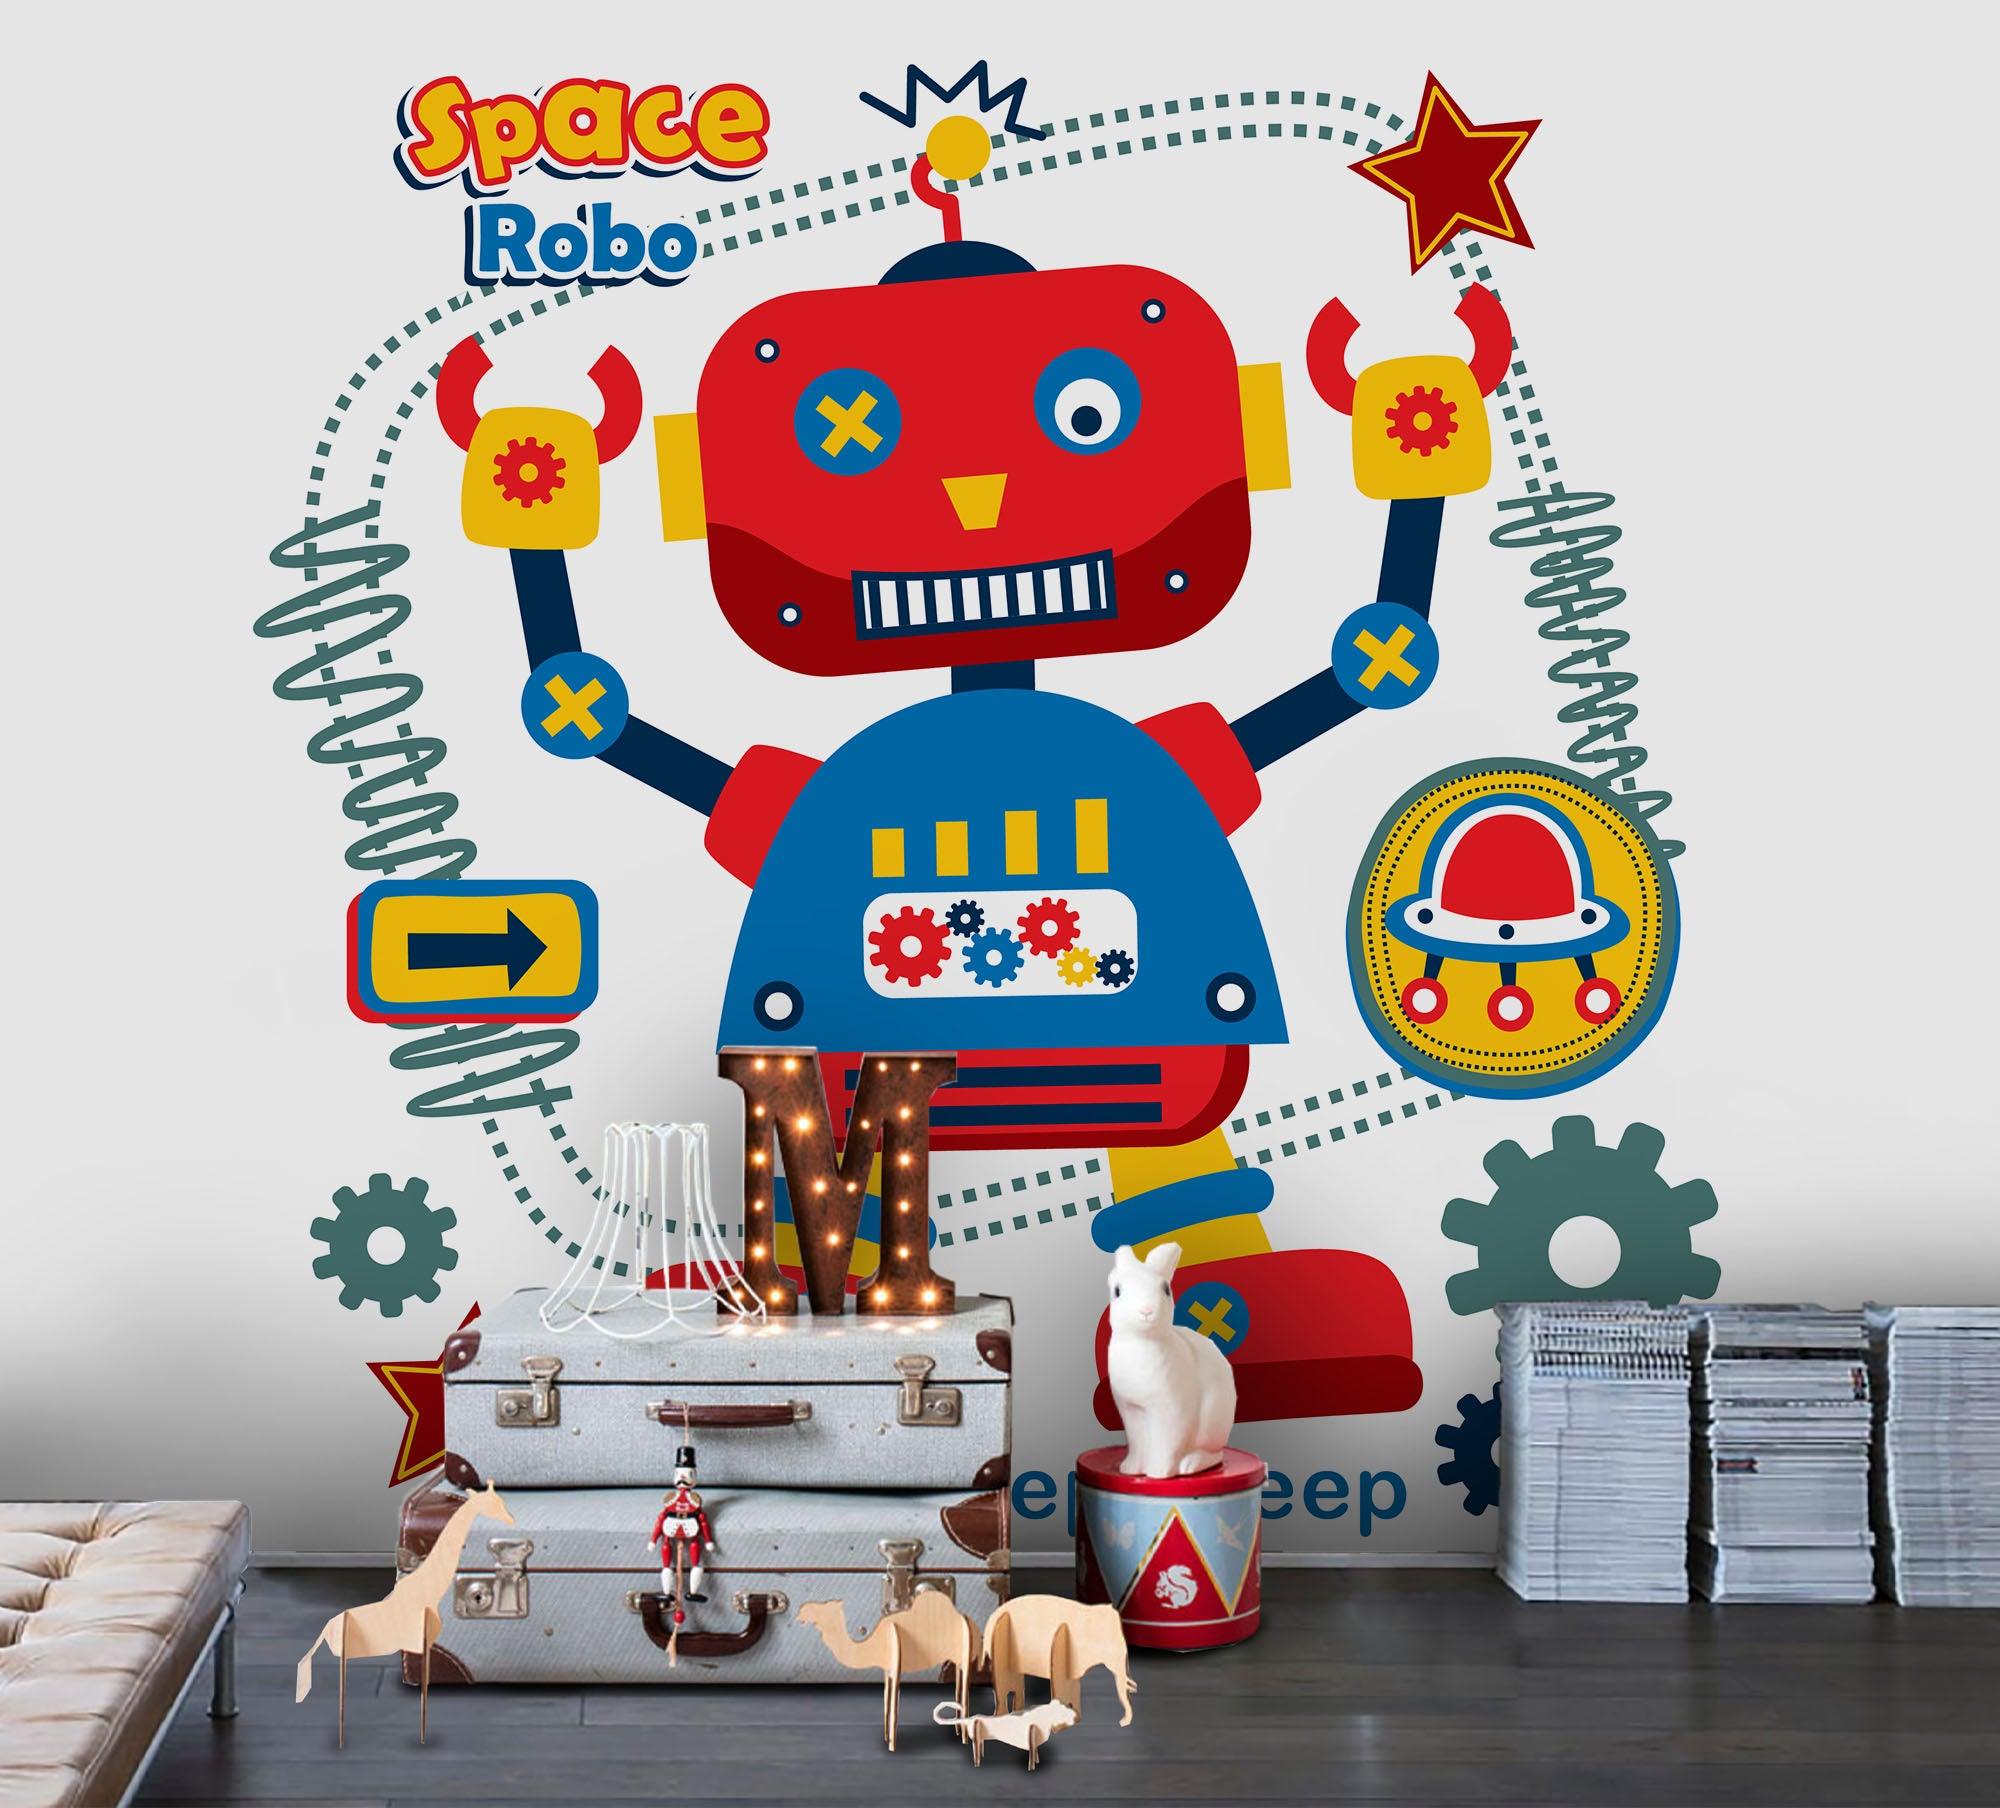 3D Cartoon Robot Pattern Wall Mural Wallpaper 44- Jess Art Decoration